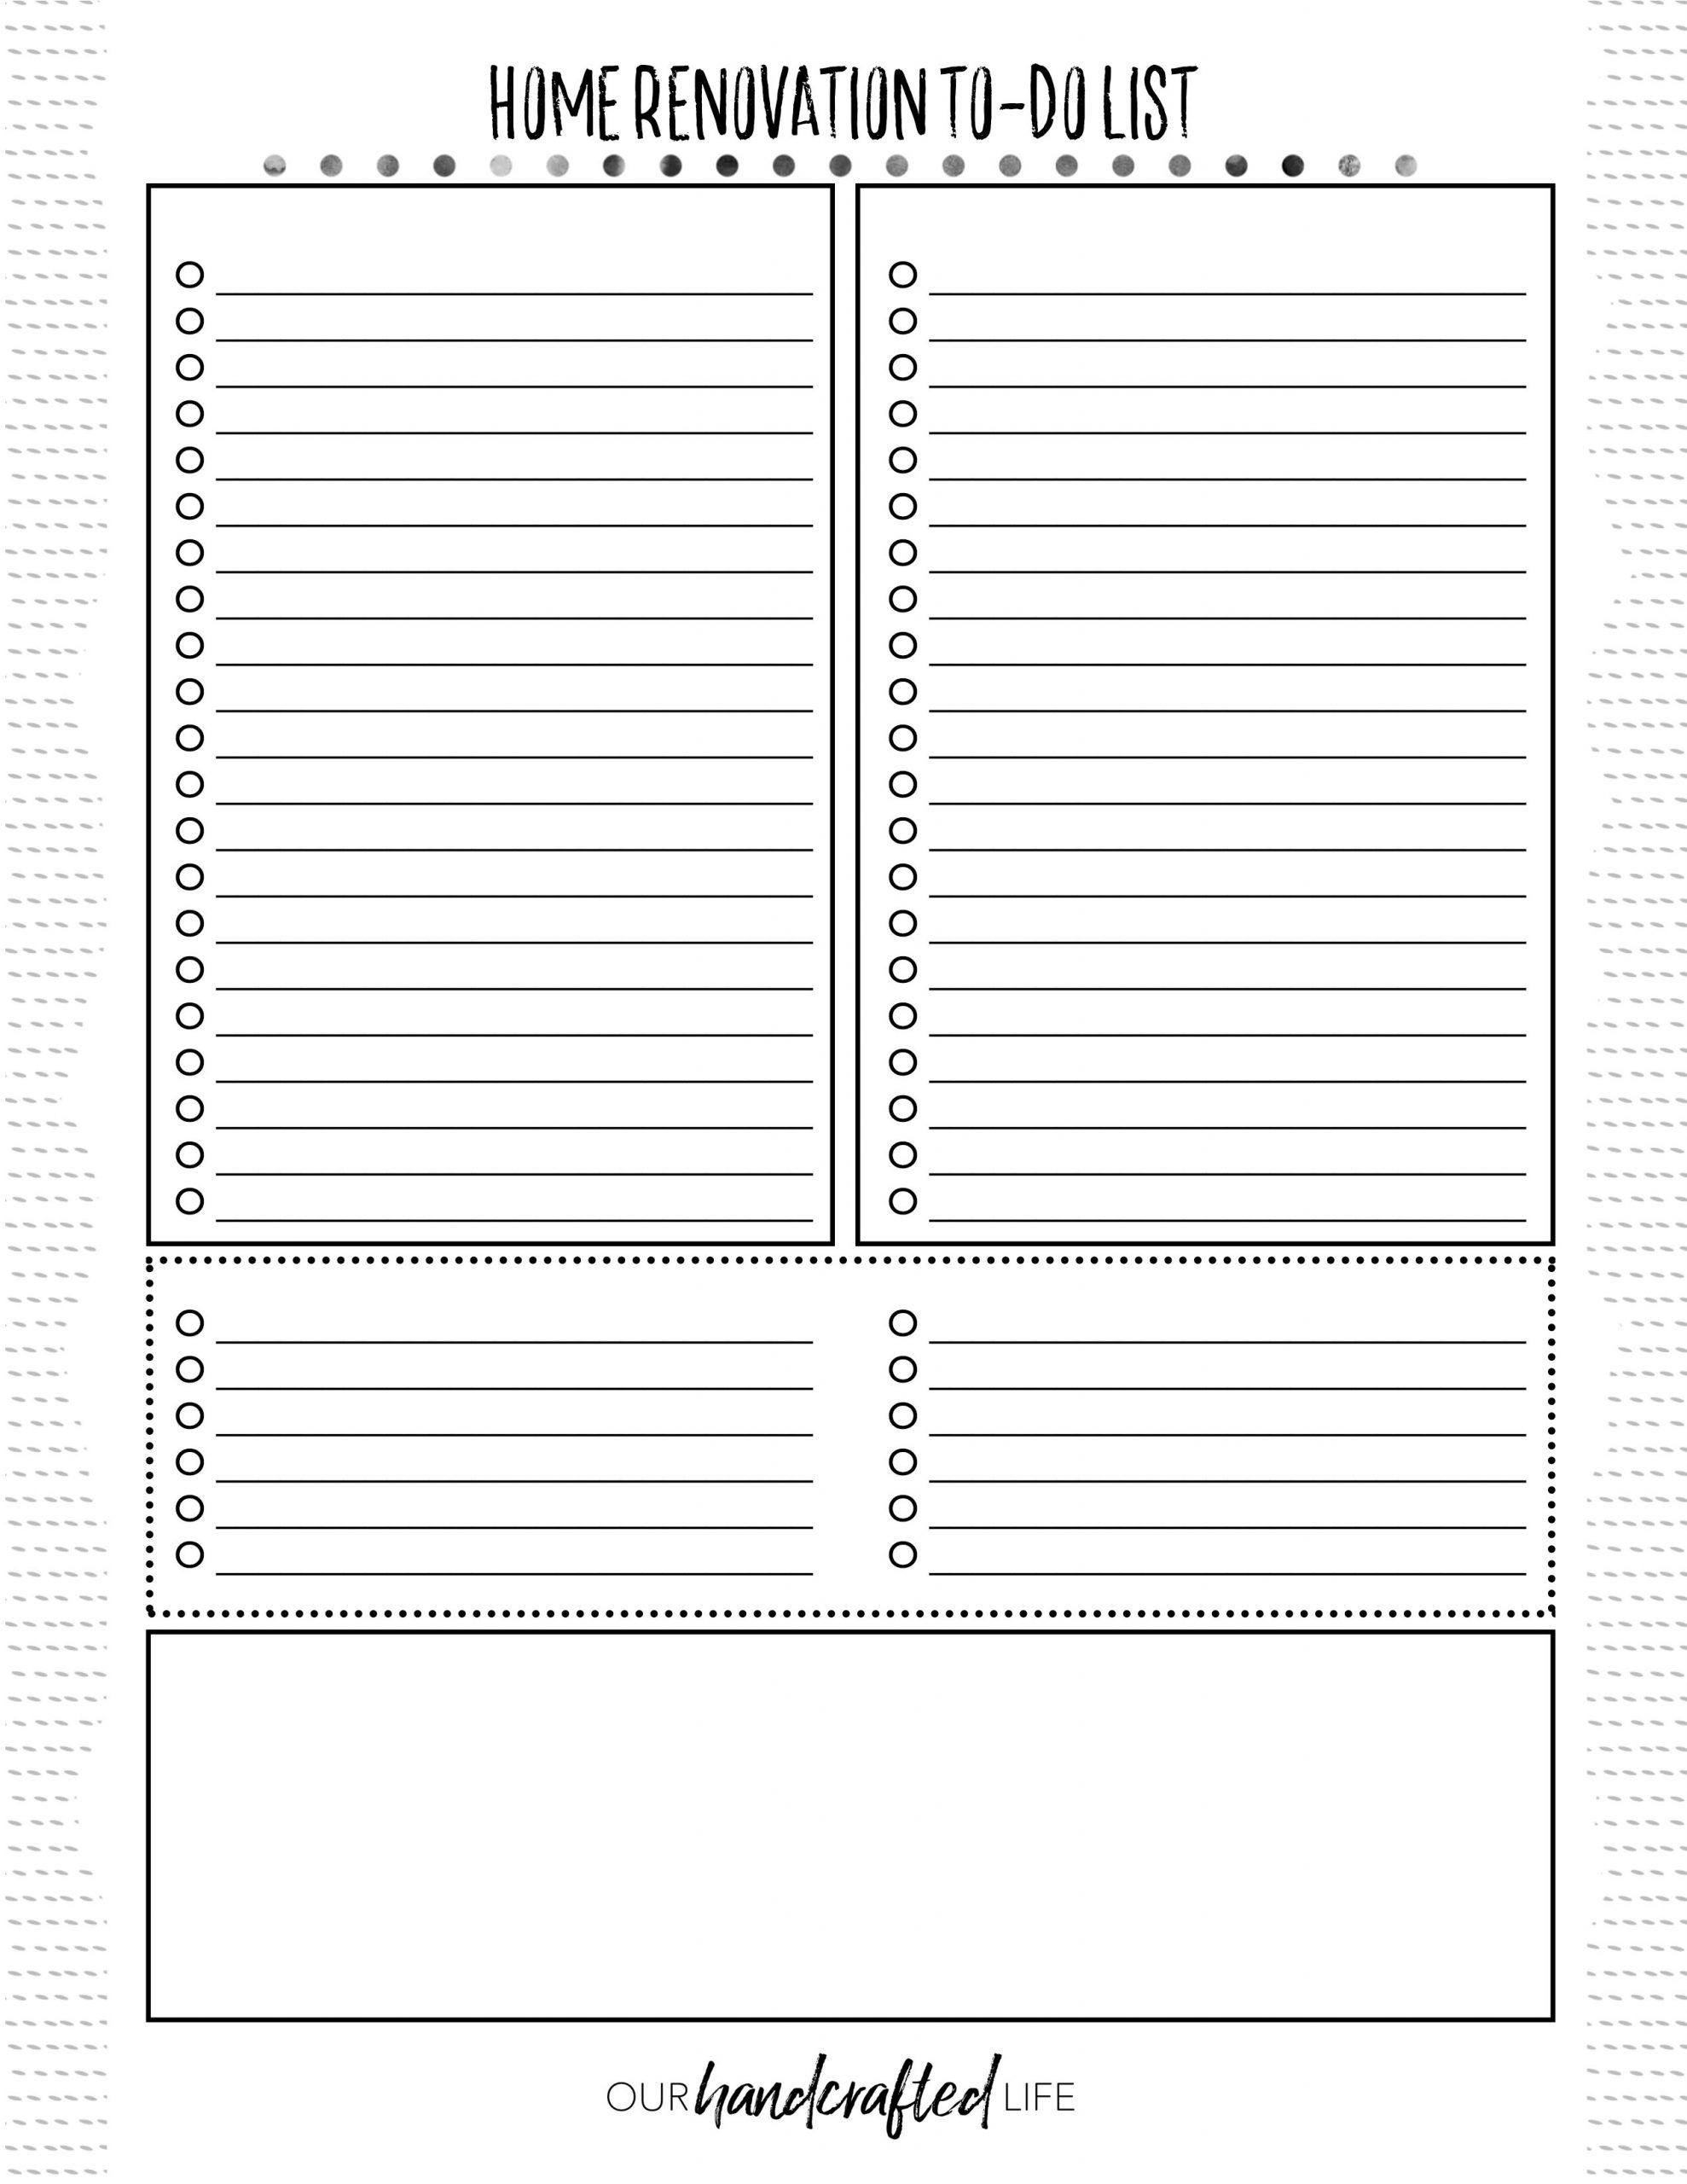 guest list planner template